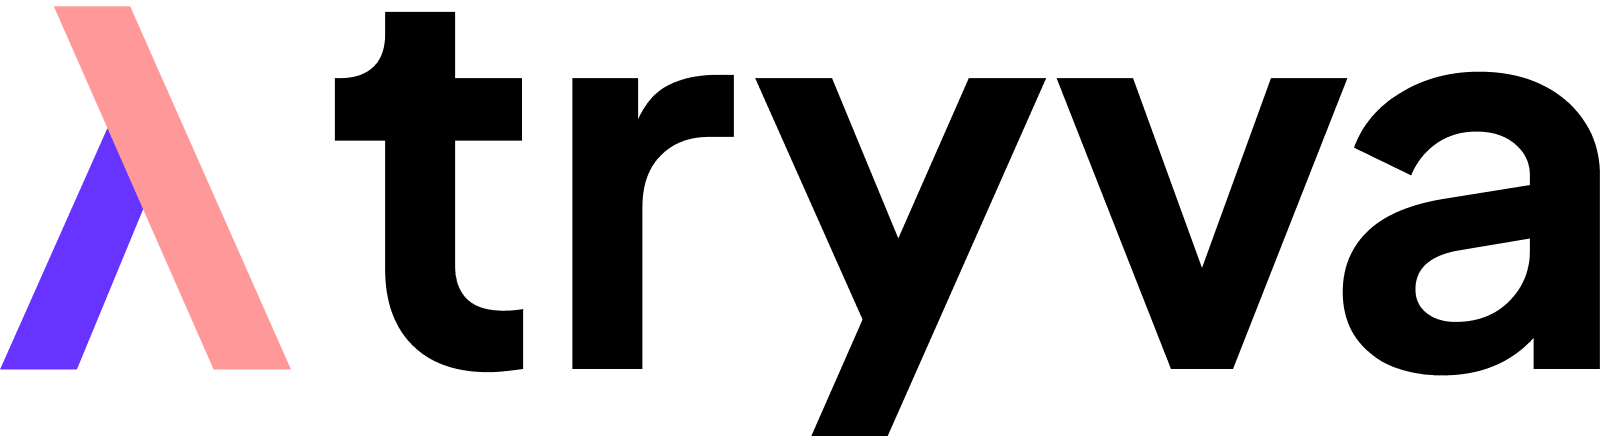 tryva-logo